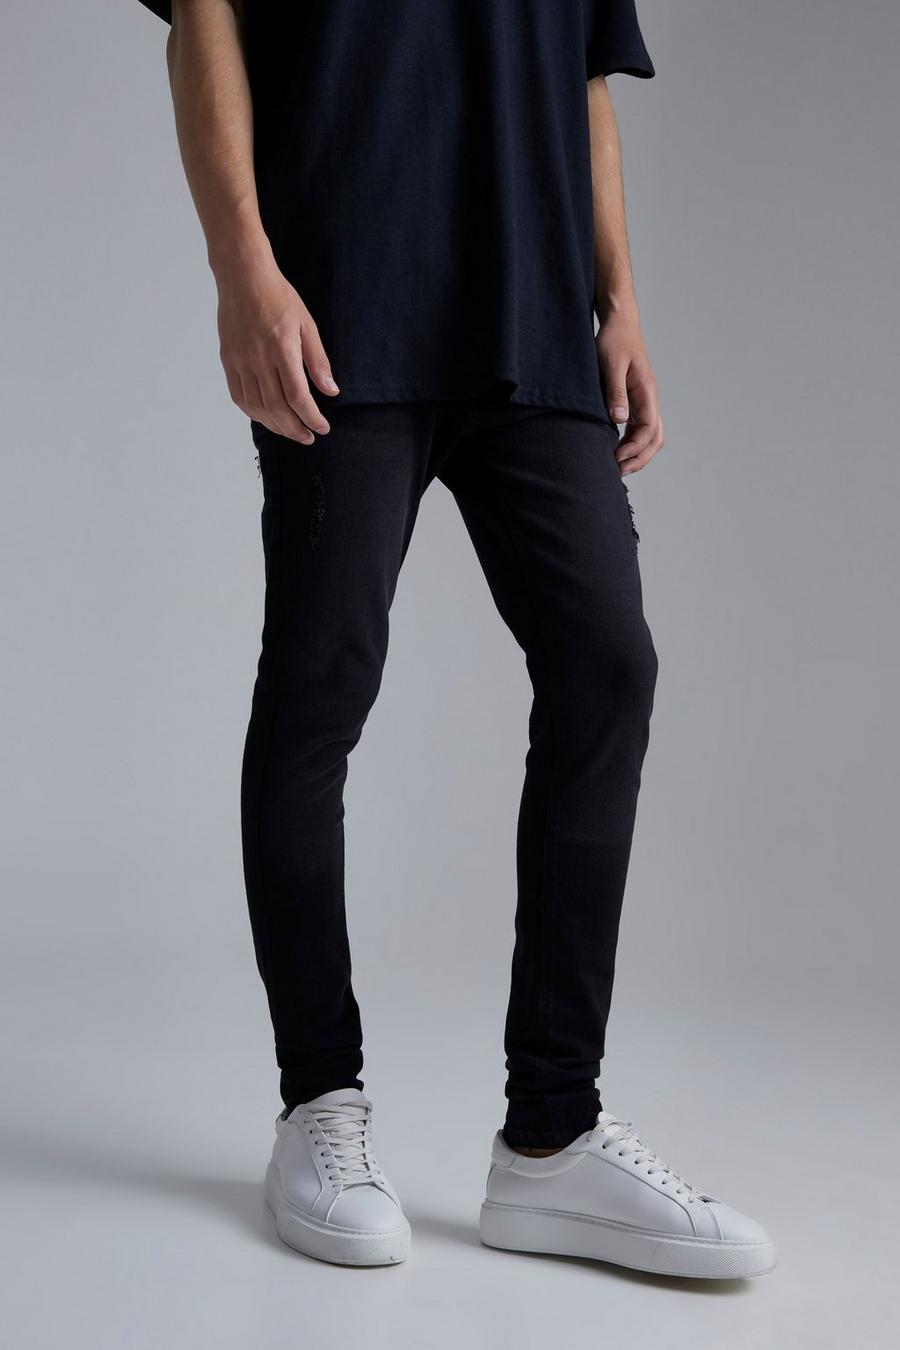 Jeans Skinny Fit in Stretch effetto smagliato con pieghe sul fondo, Washed black